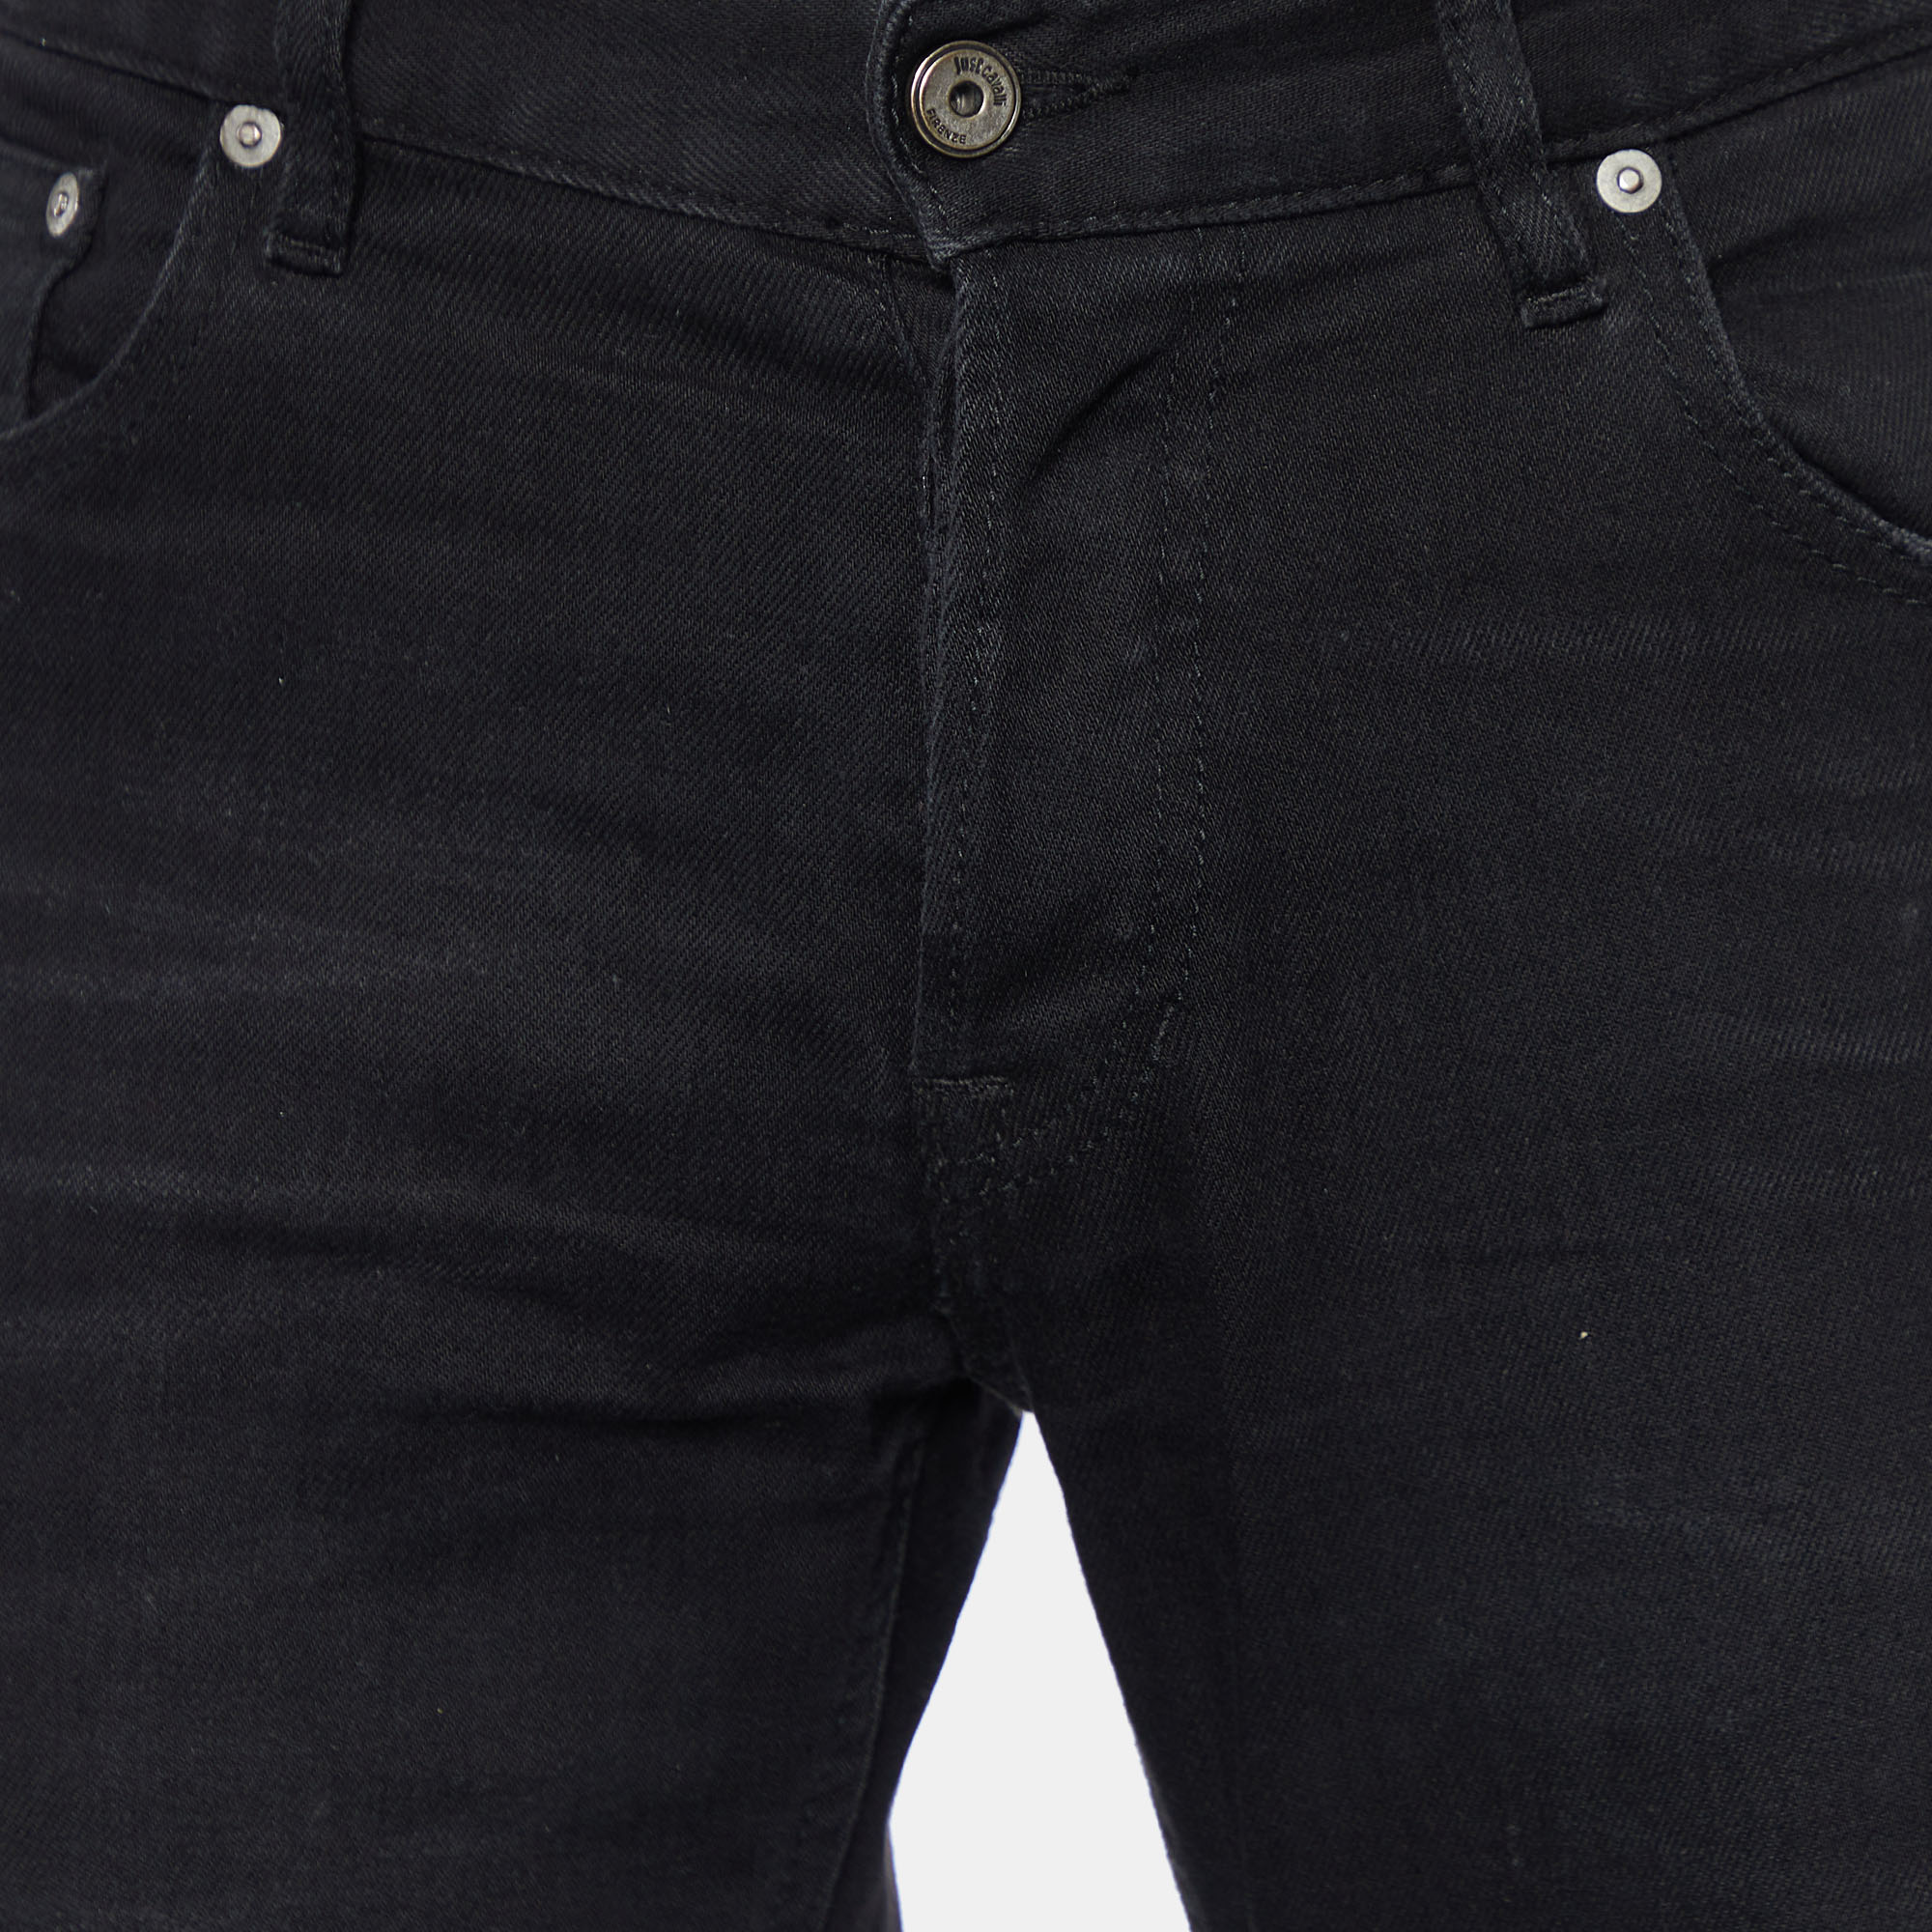 Just Cavalli Black Denim Super Slim Fit Jeans L